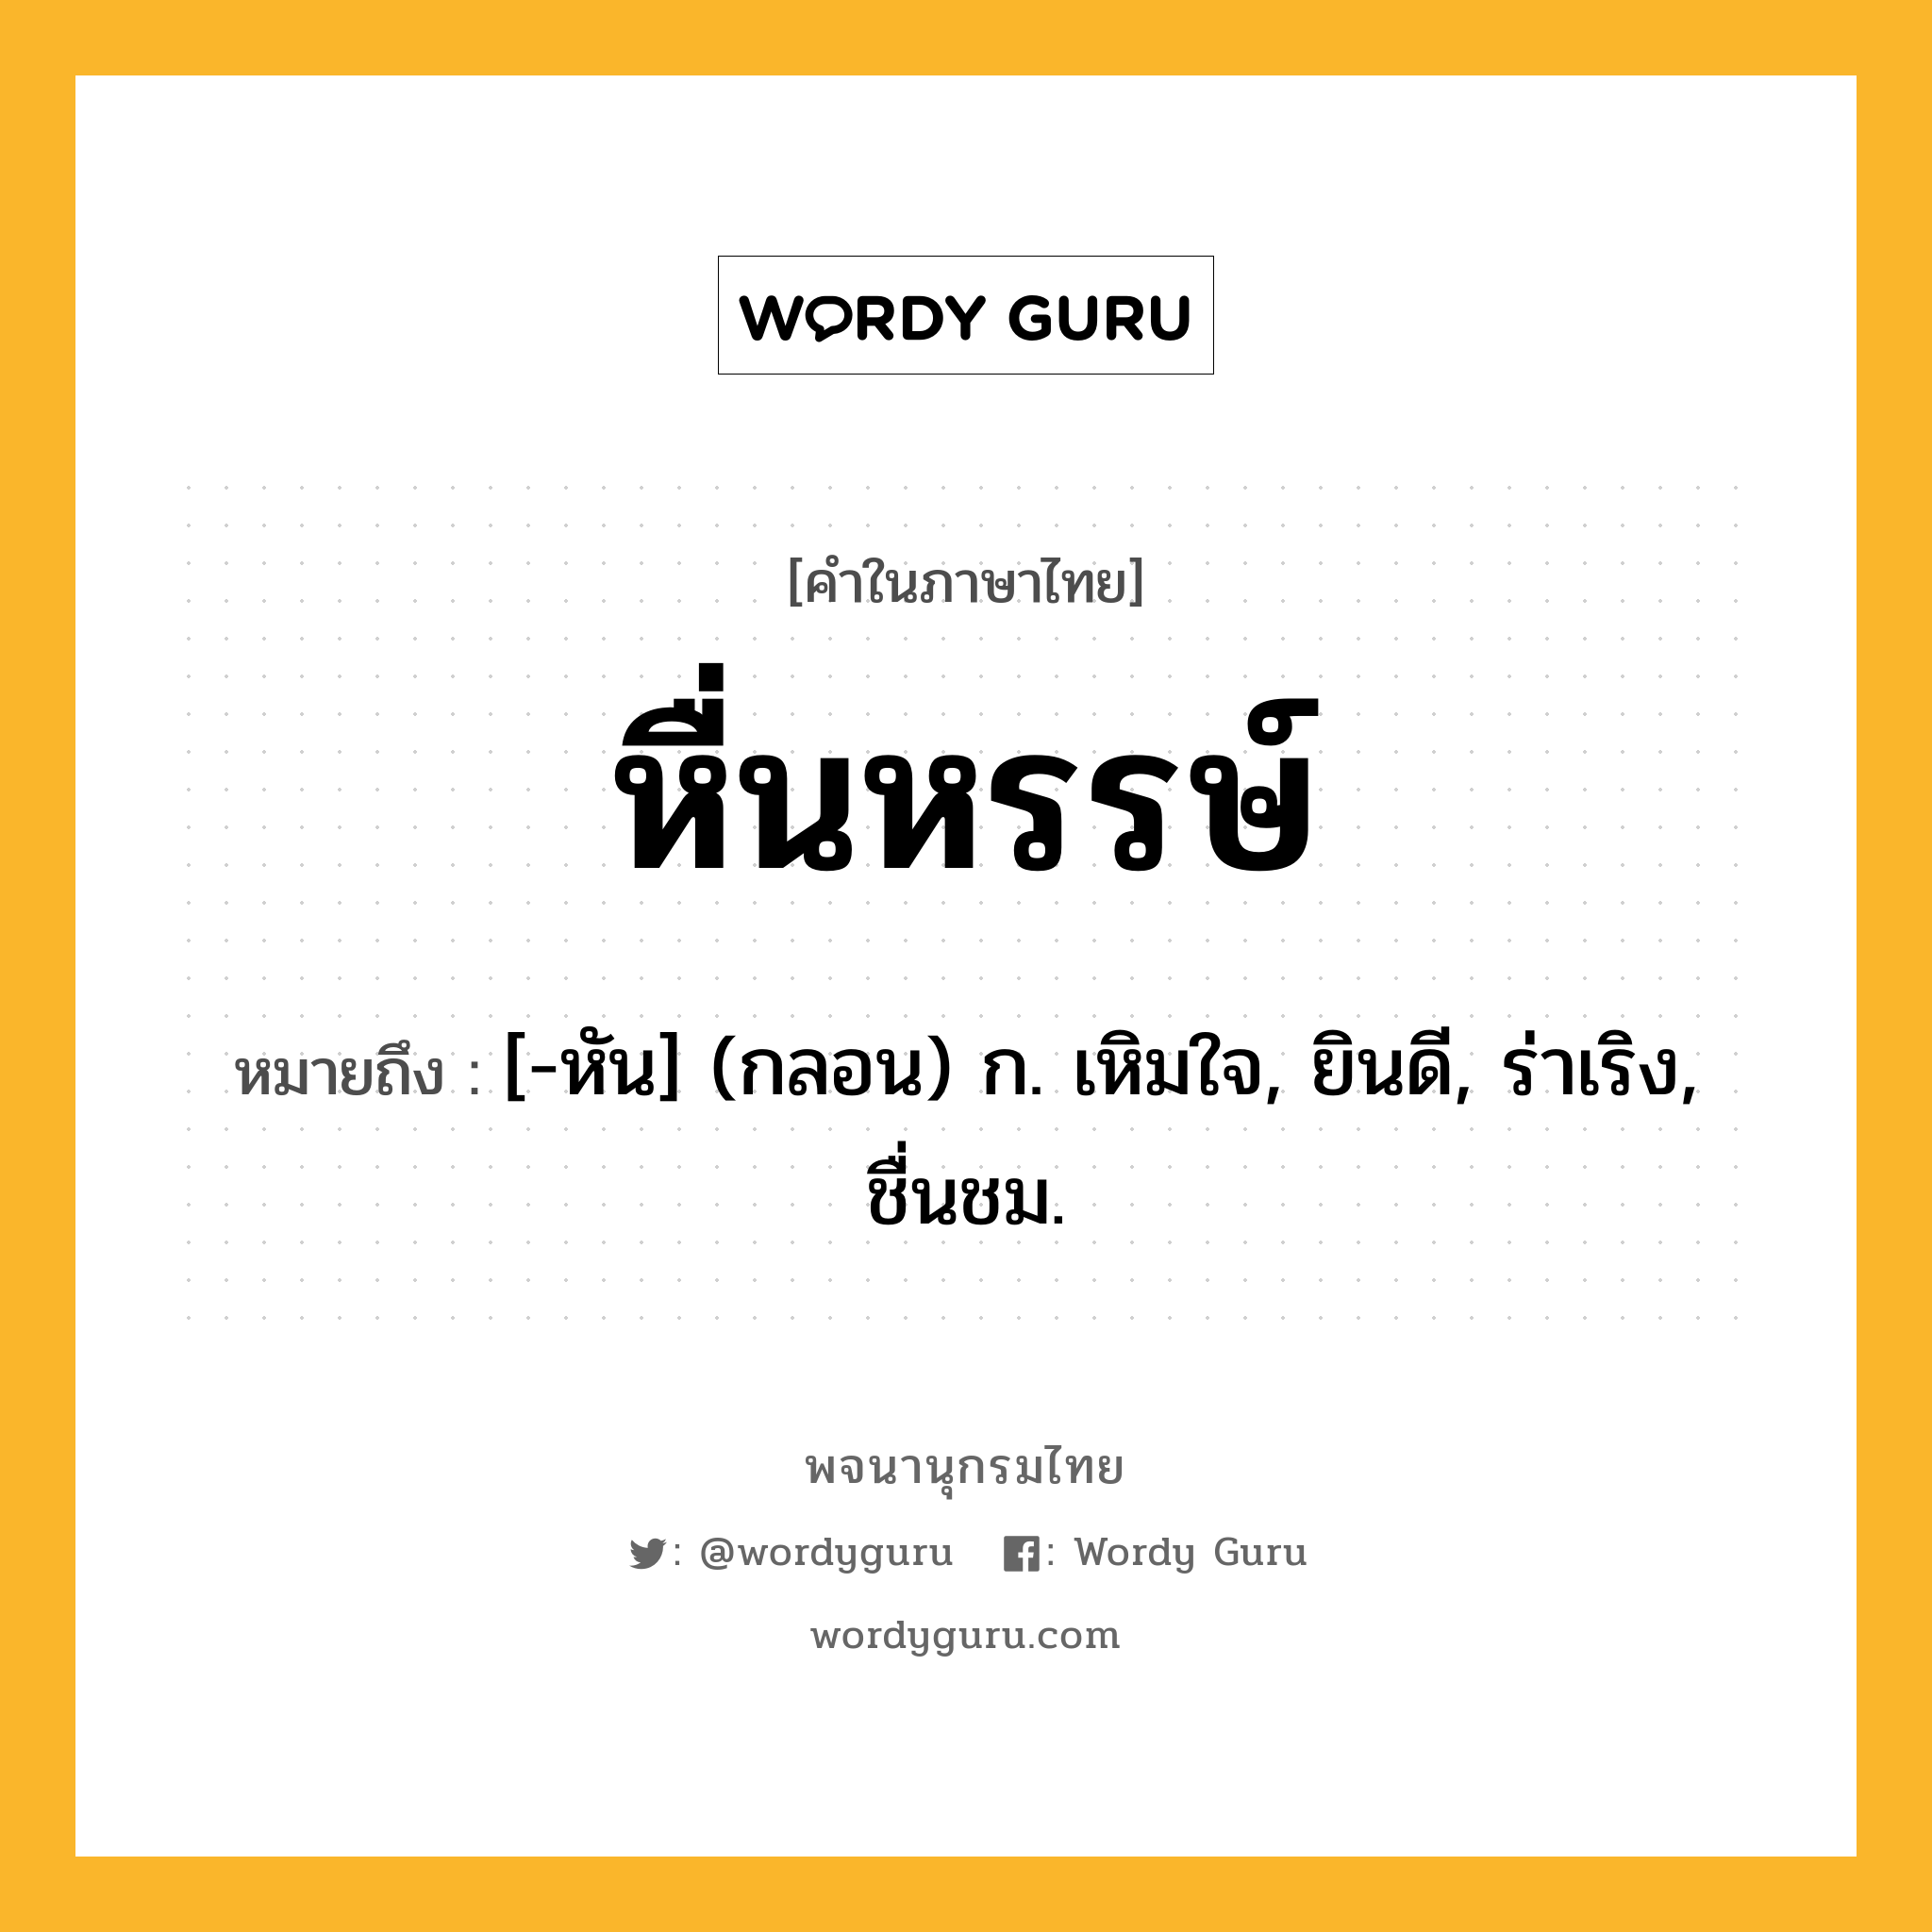 หื่นหรรษ์ ความหมาย หมายถึงอะไร?, คำในภาษาไทย หื่นหรรษ์ หมายถึง [-หัน] (กลอน) ก. เหิมใจ, ยินดี, ร่าเริง, ชื่นชม.